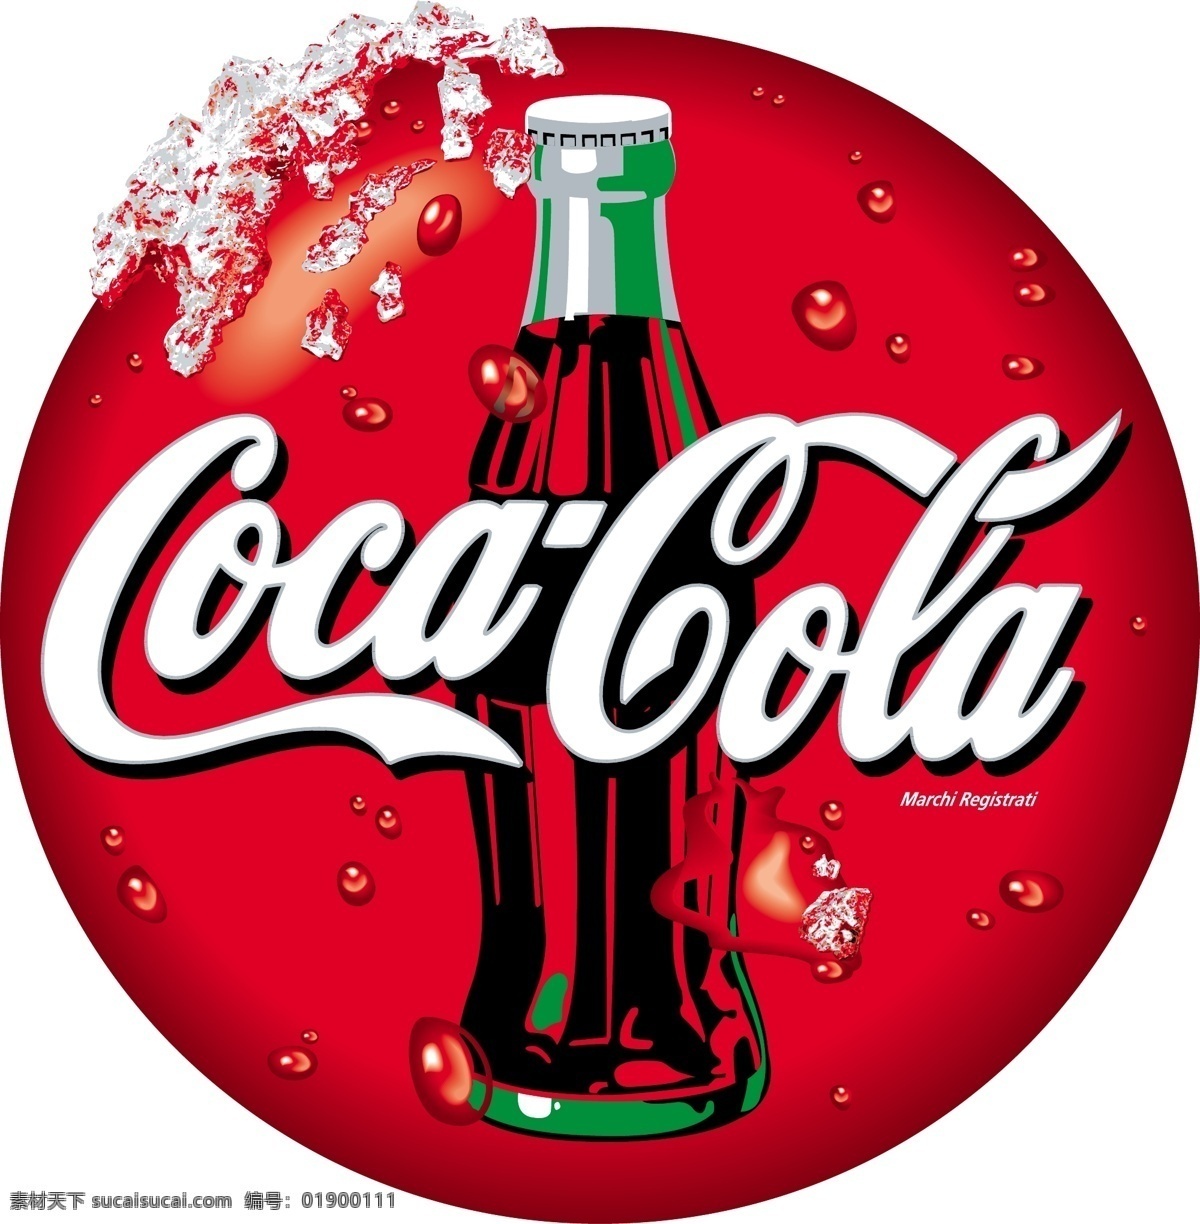 可口可乐 可乐 logo 瓶盖 水滴 红色 瓶子 冰 冰块 coca cola 餐饮美食 生活百科 矢量